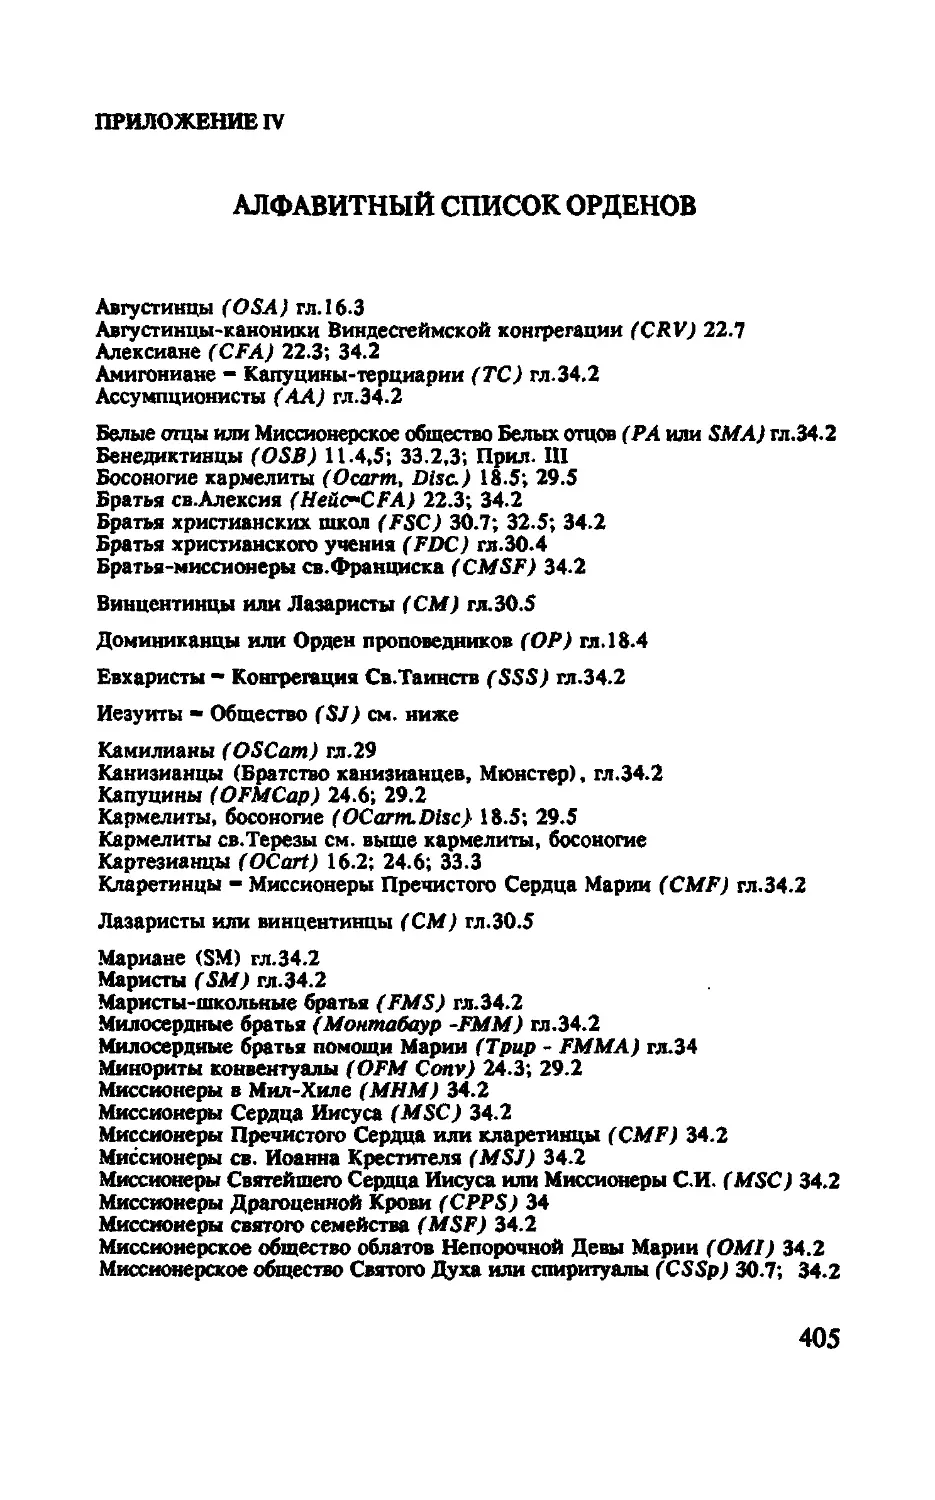 IV. Алфавитный список орденов